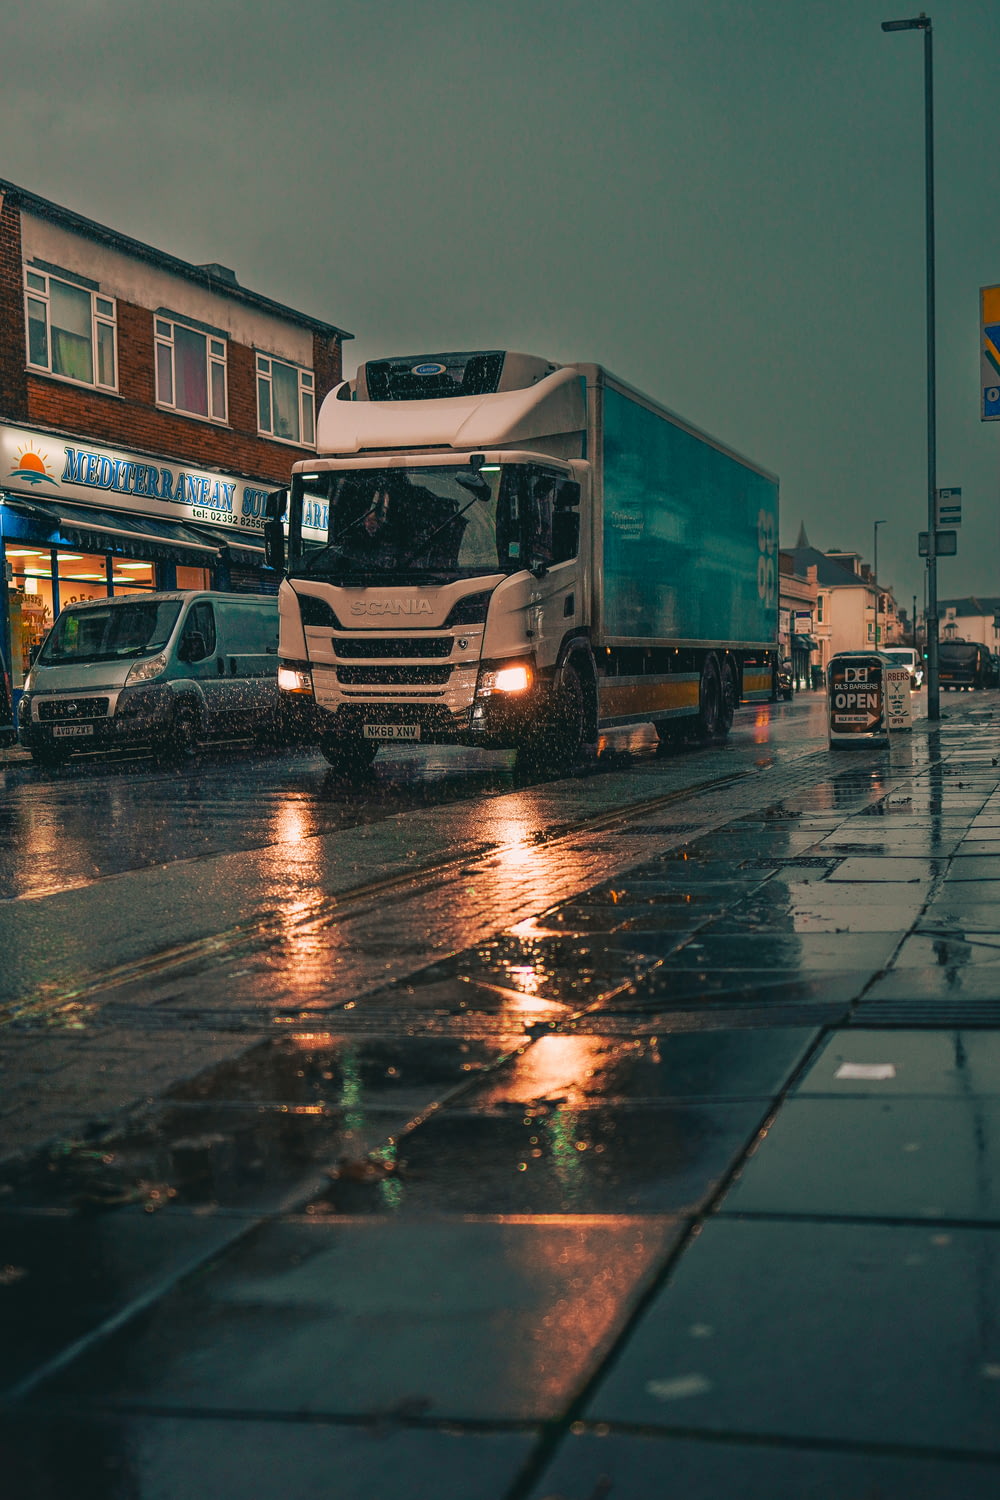 a truck on a wet street